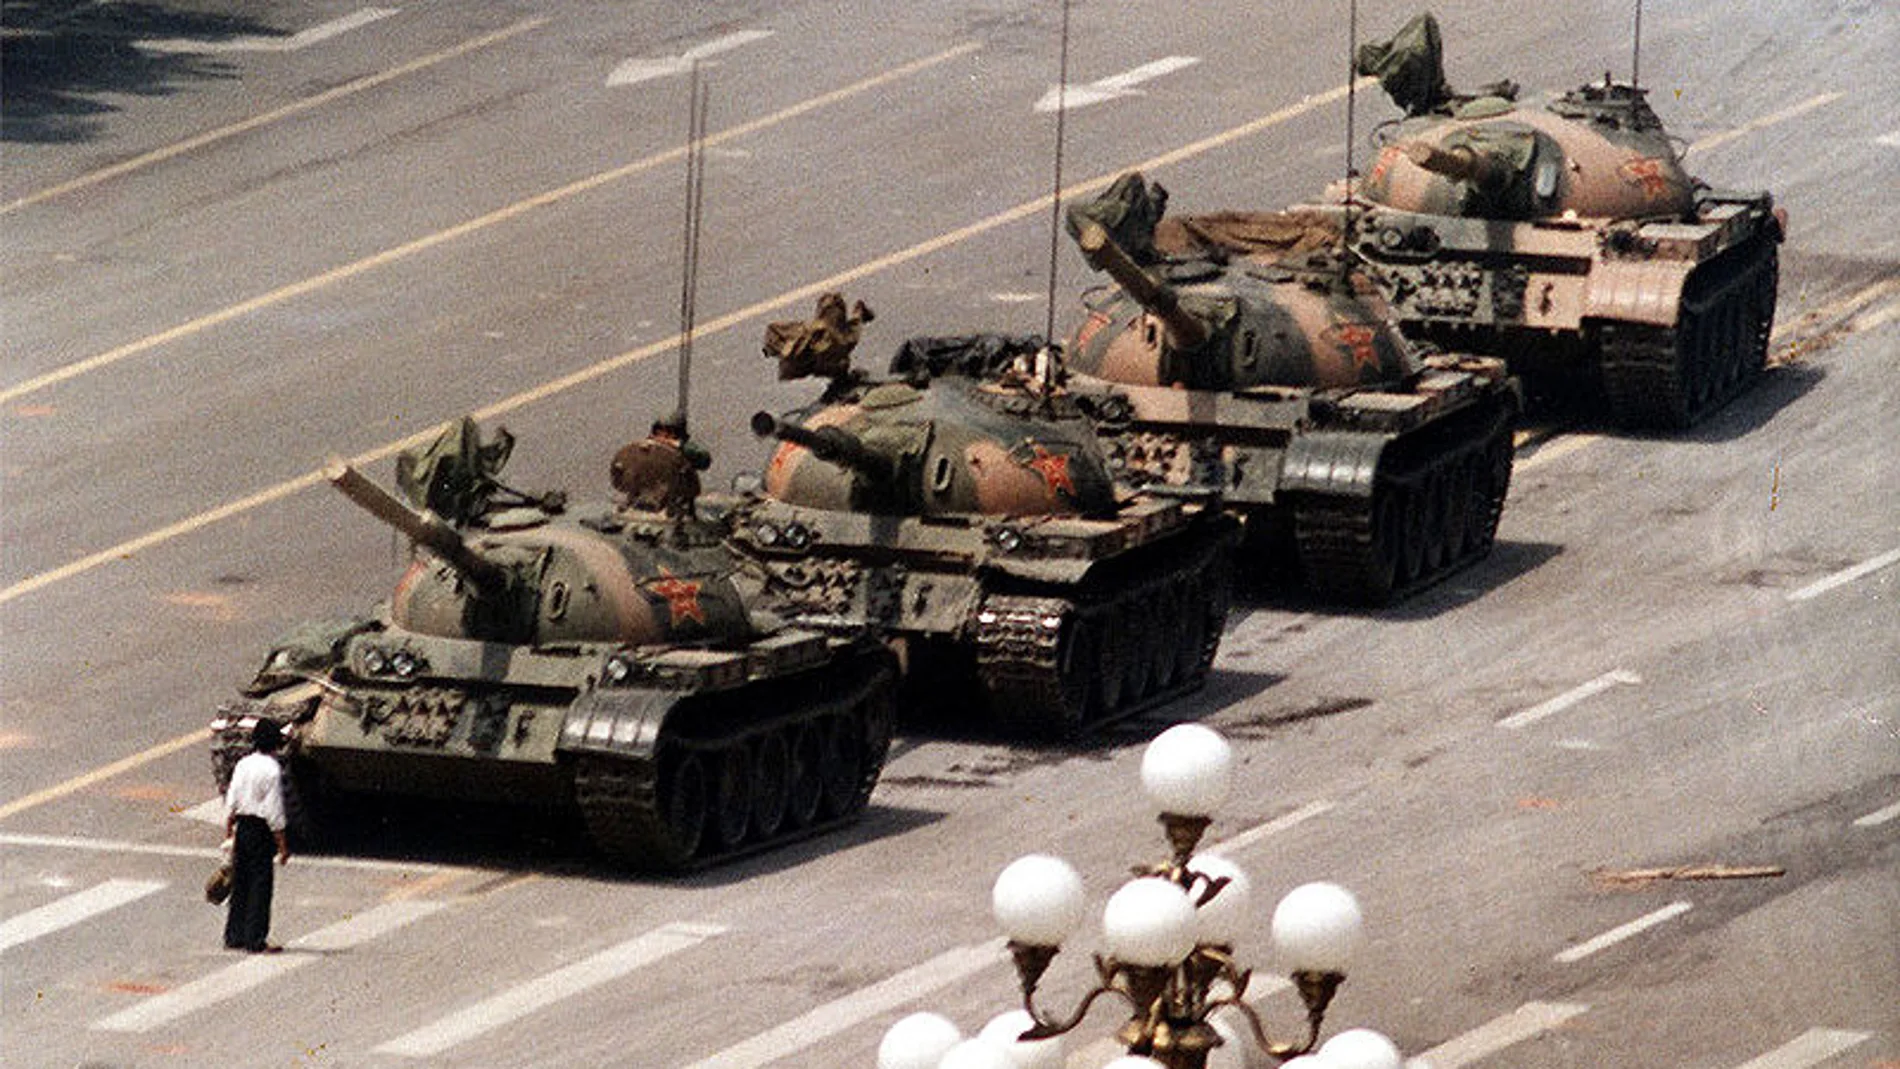 Un hombre aguanta delante de los tanques en Tiananmen